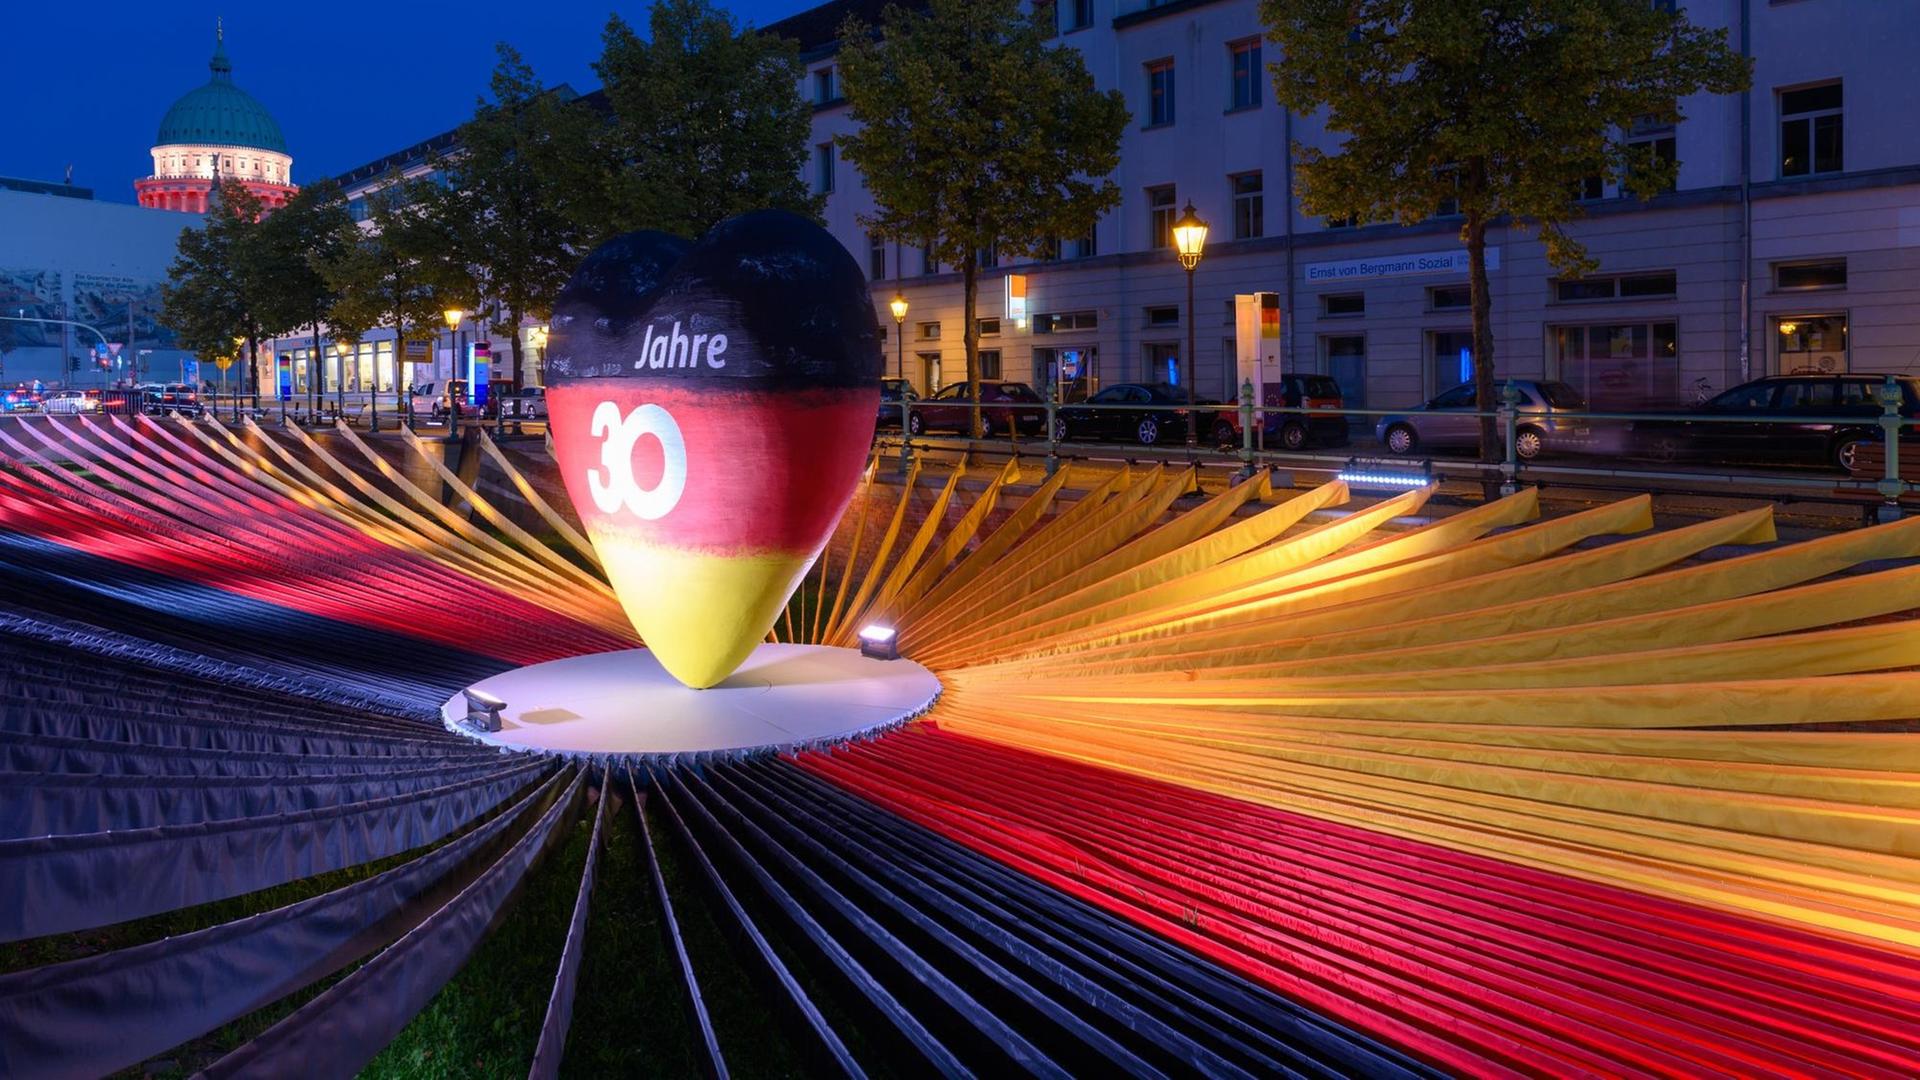 Ein schwarz-rot-goldenes Herz steht in der Ausstellung "Weg zur Einheit" im Rahmen der EinheitsEXPO im Mittelpunkt von schwarzen, roten und gelben Stoffbahnen.